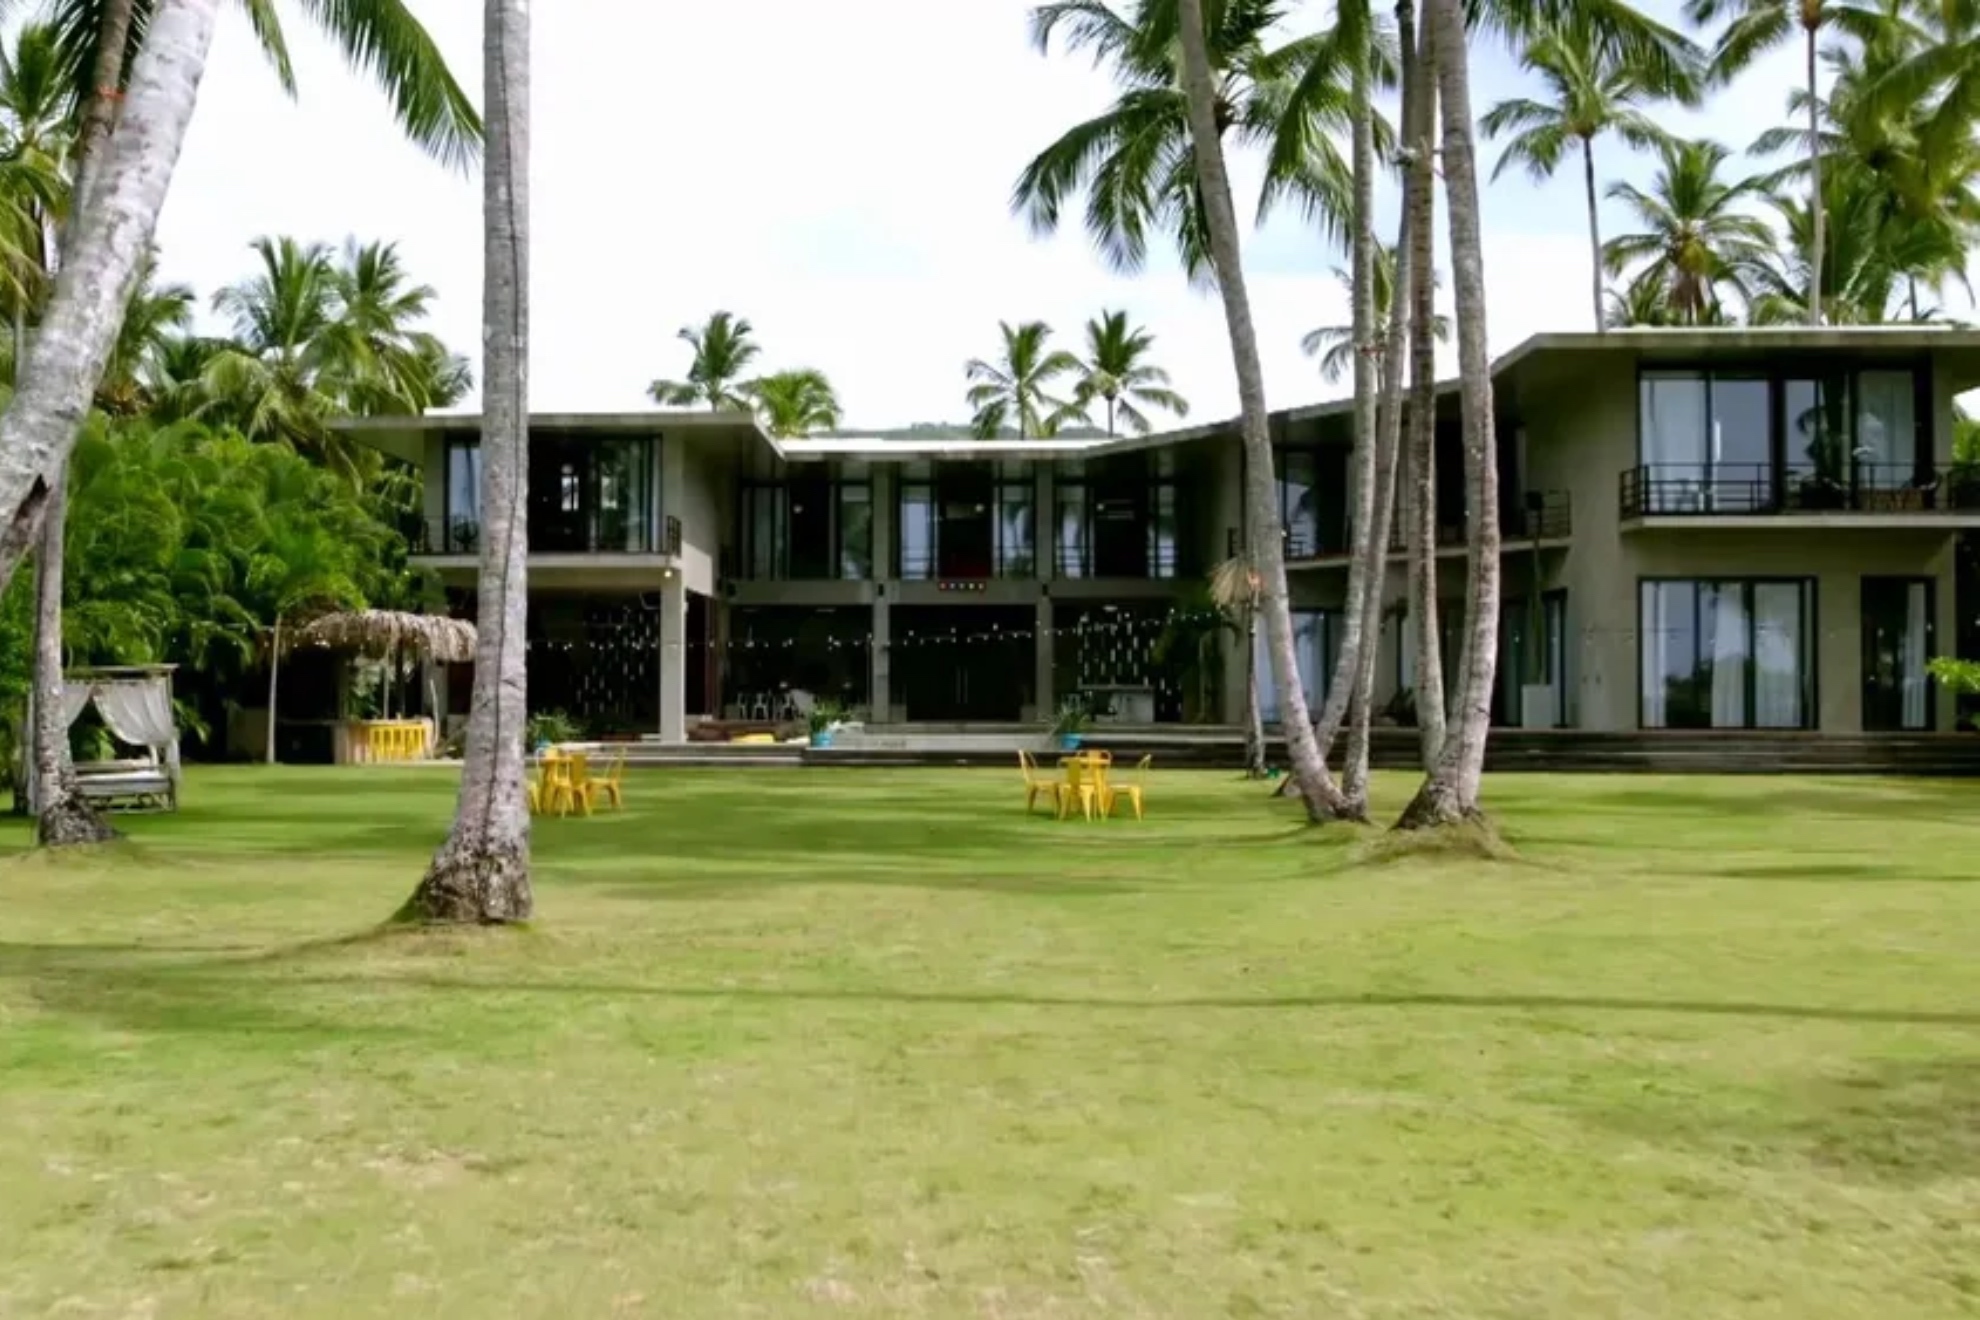 Villa Paraíso, así es el lujoso hogar de los concursantes de 'La isla de las tentaciones'